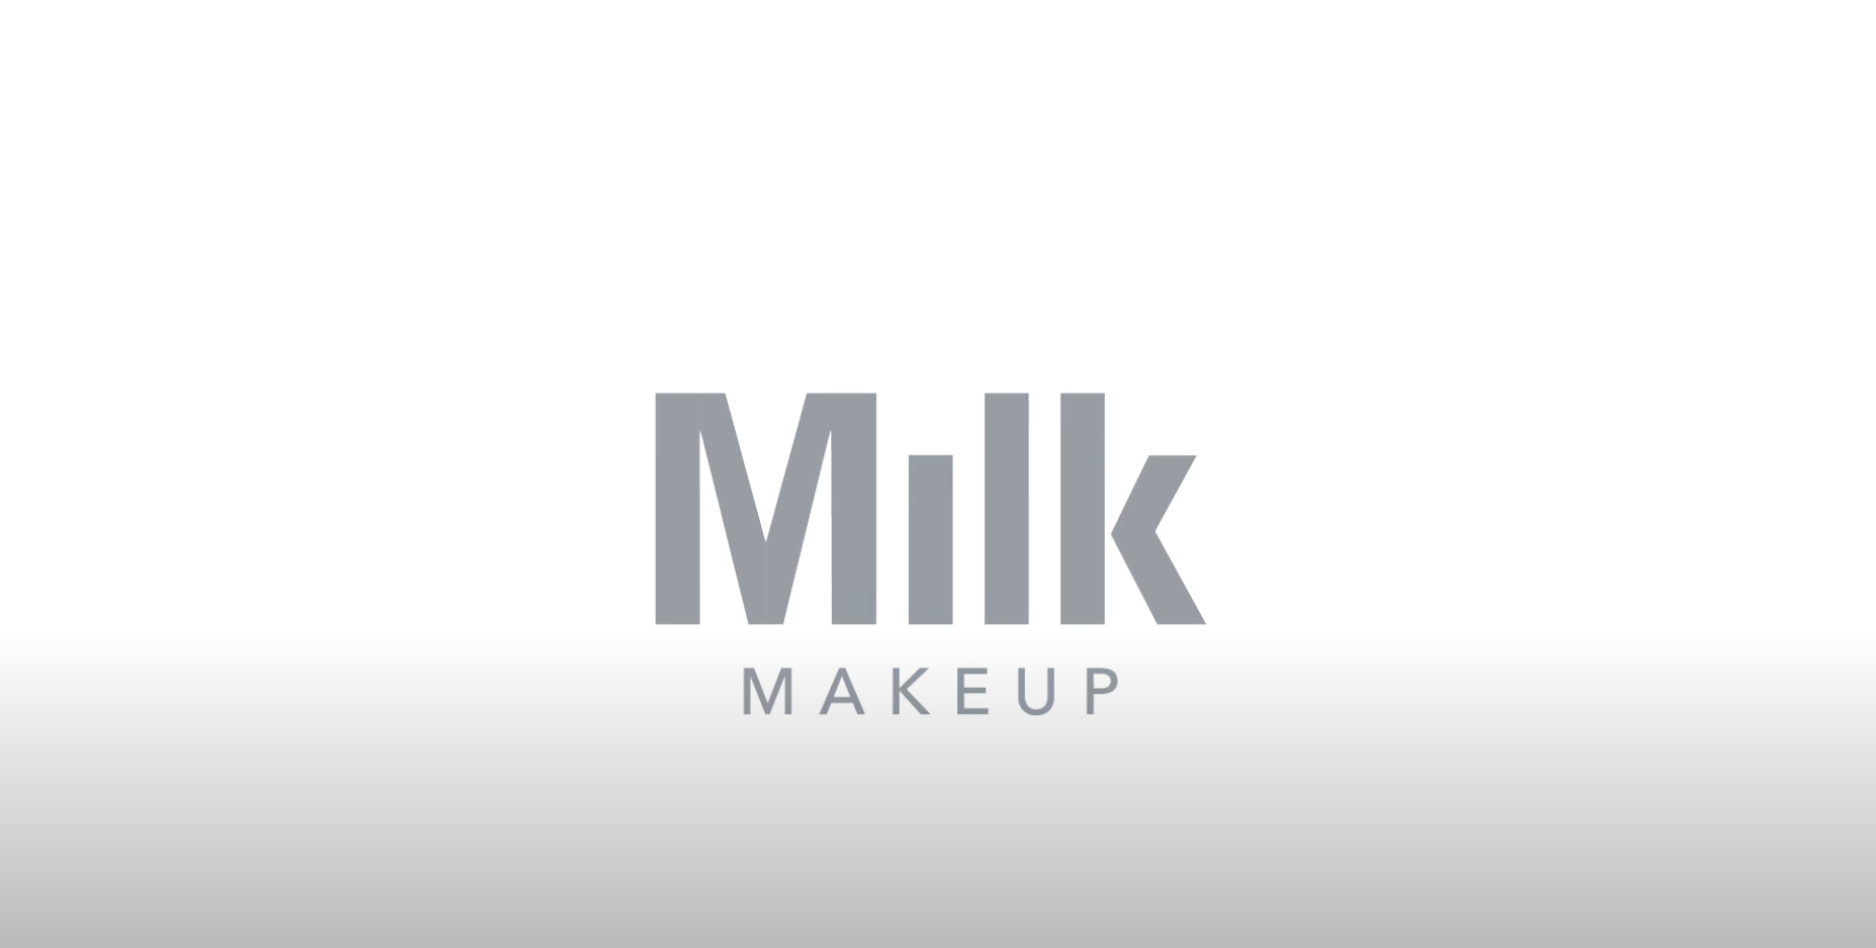 milk makeup image